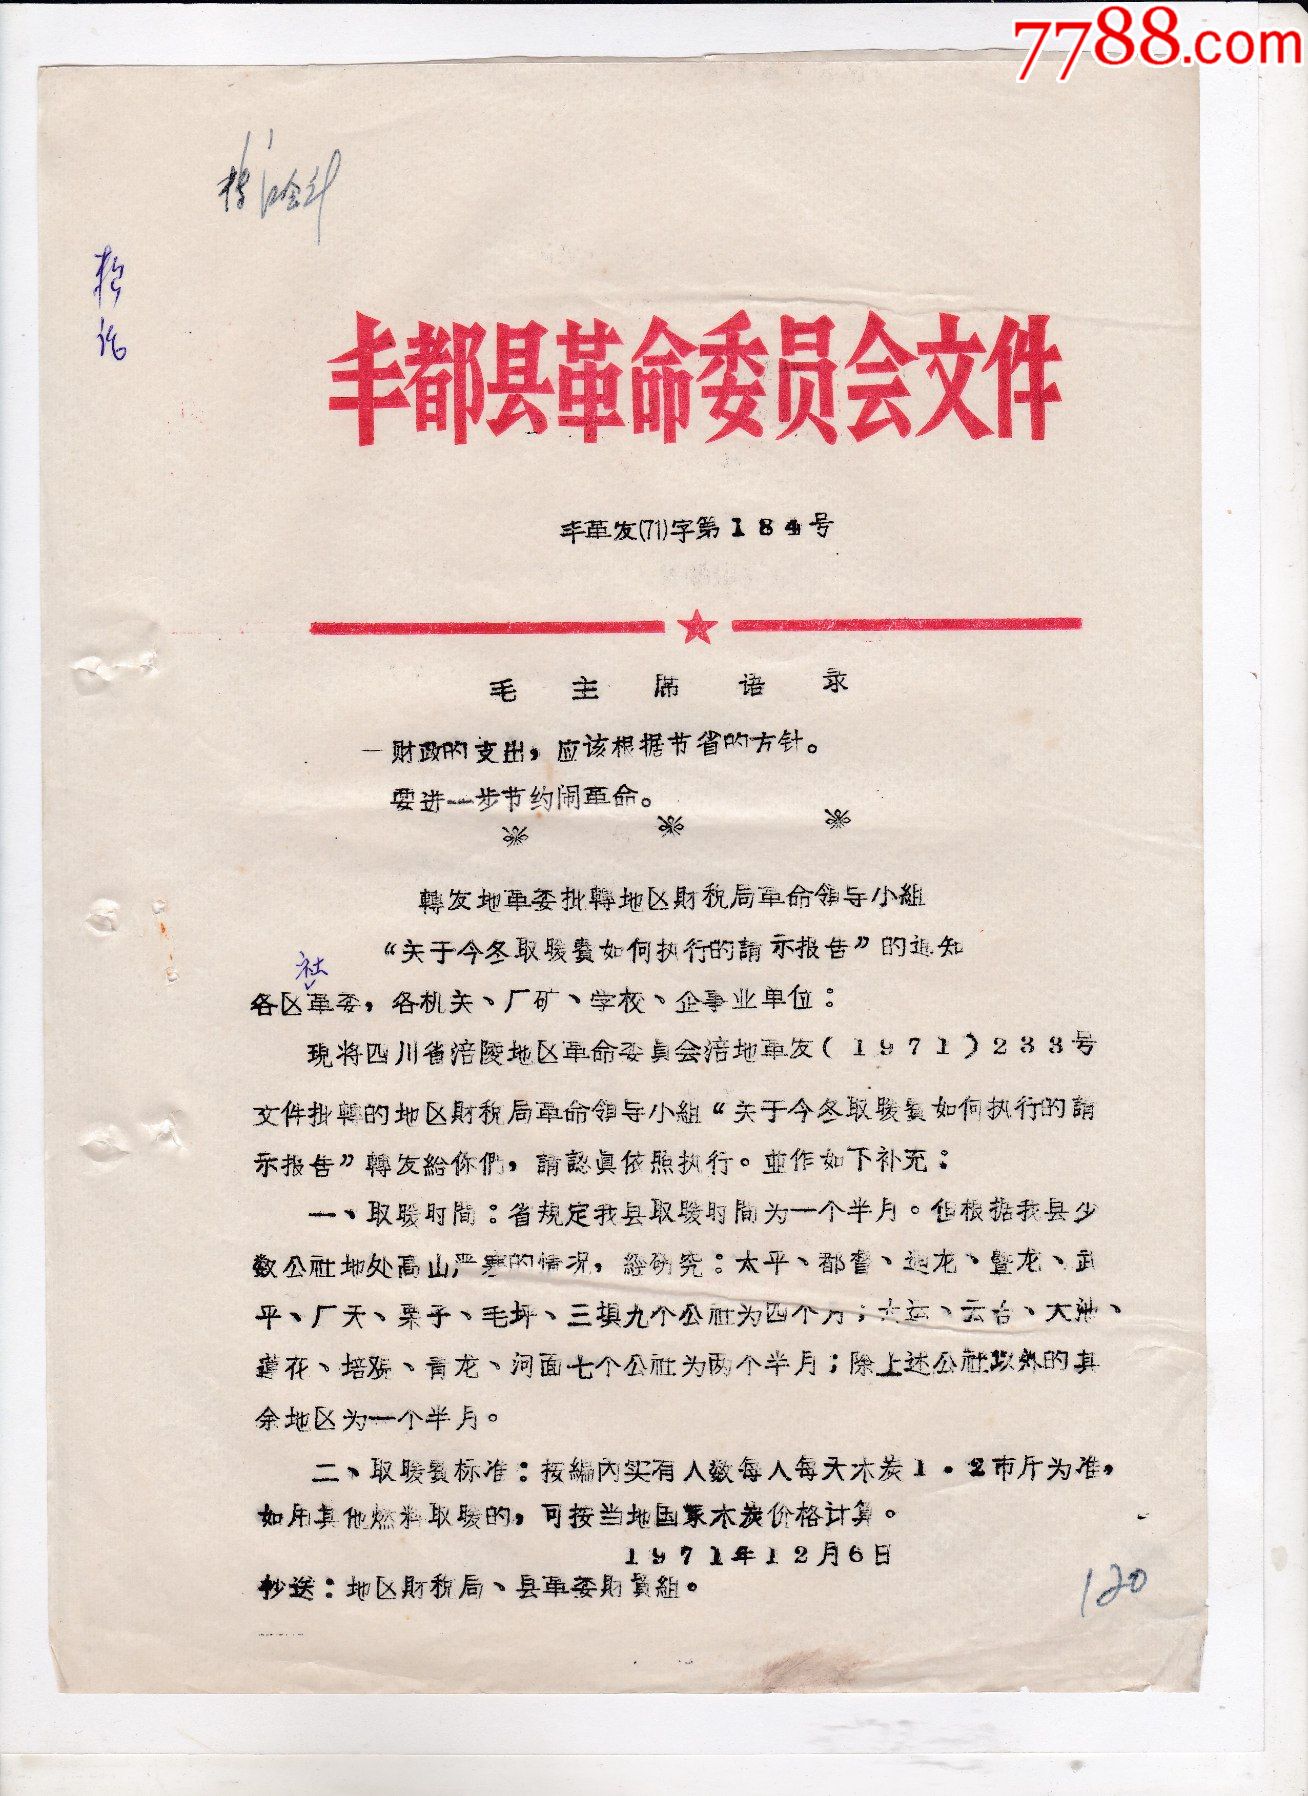 1971年四川丰都县革委会文件关于取暖费如何执行的请示报告的通知